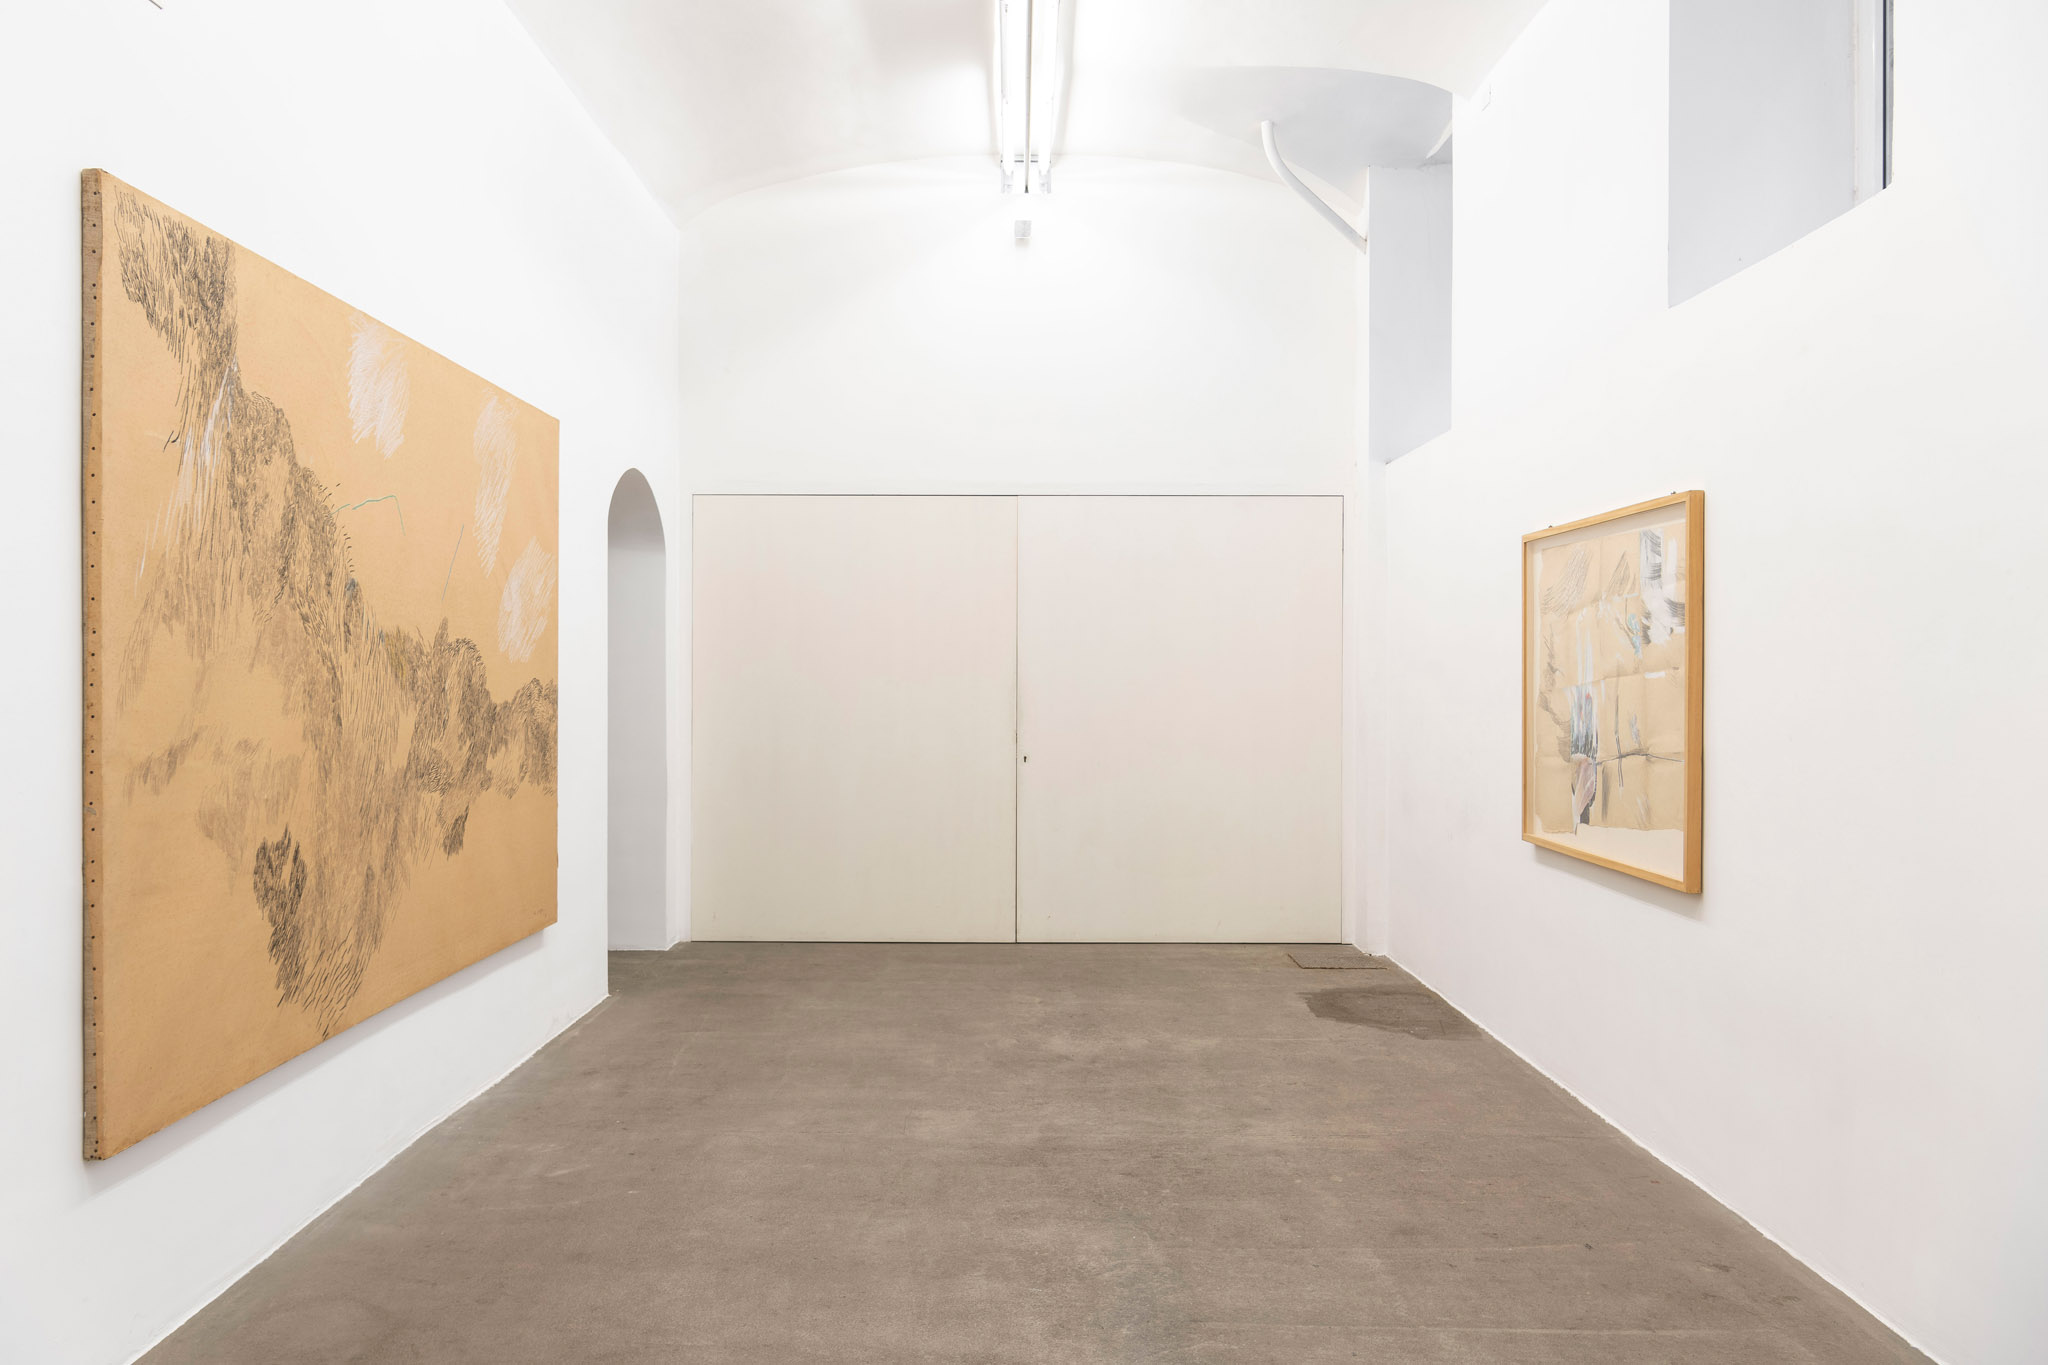 Elisa Montessori, La camera bianca. Installation view presso Fondazione Giuliani, foto di Giorgio Benni